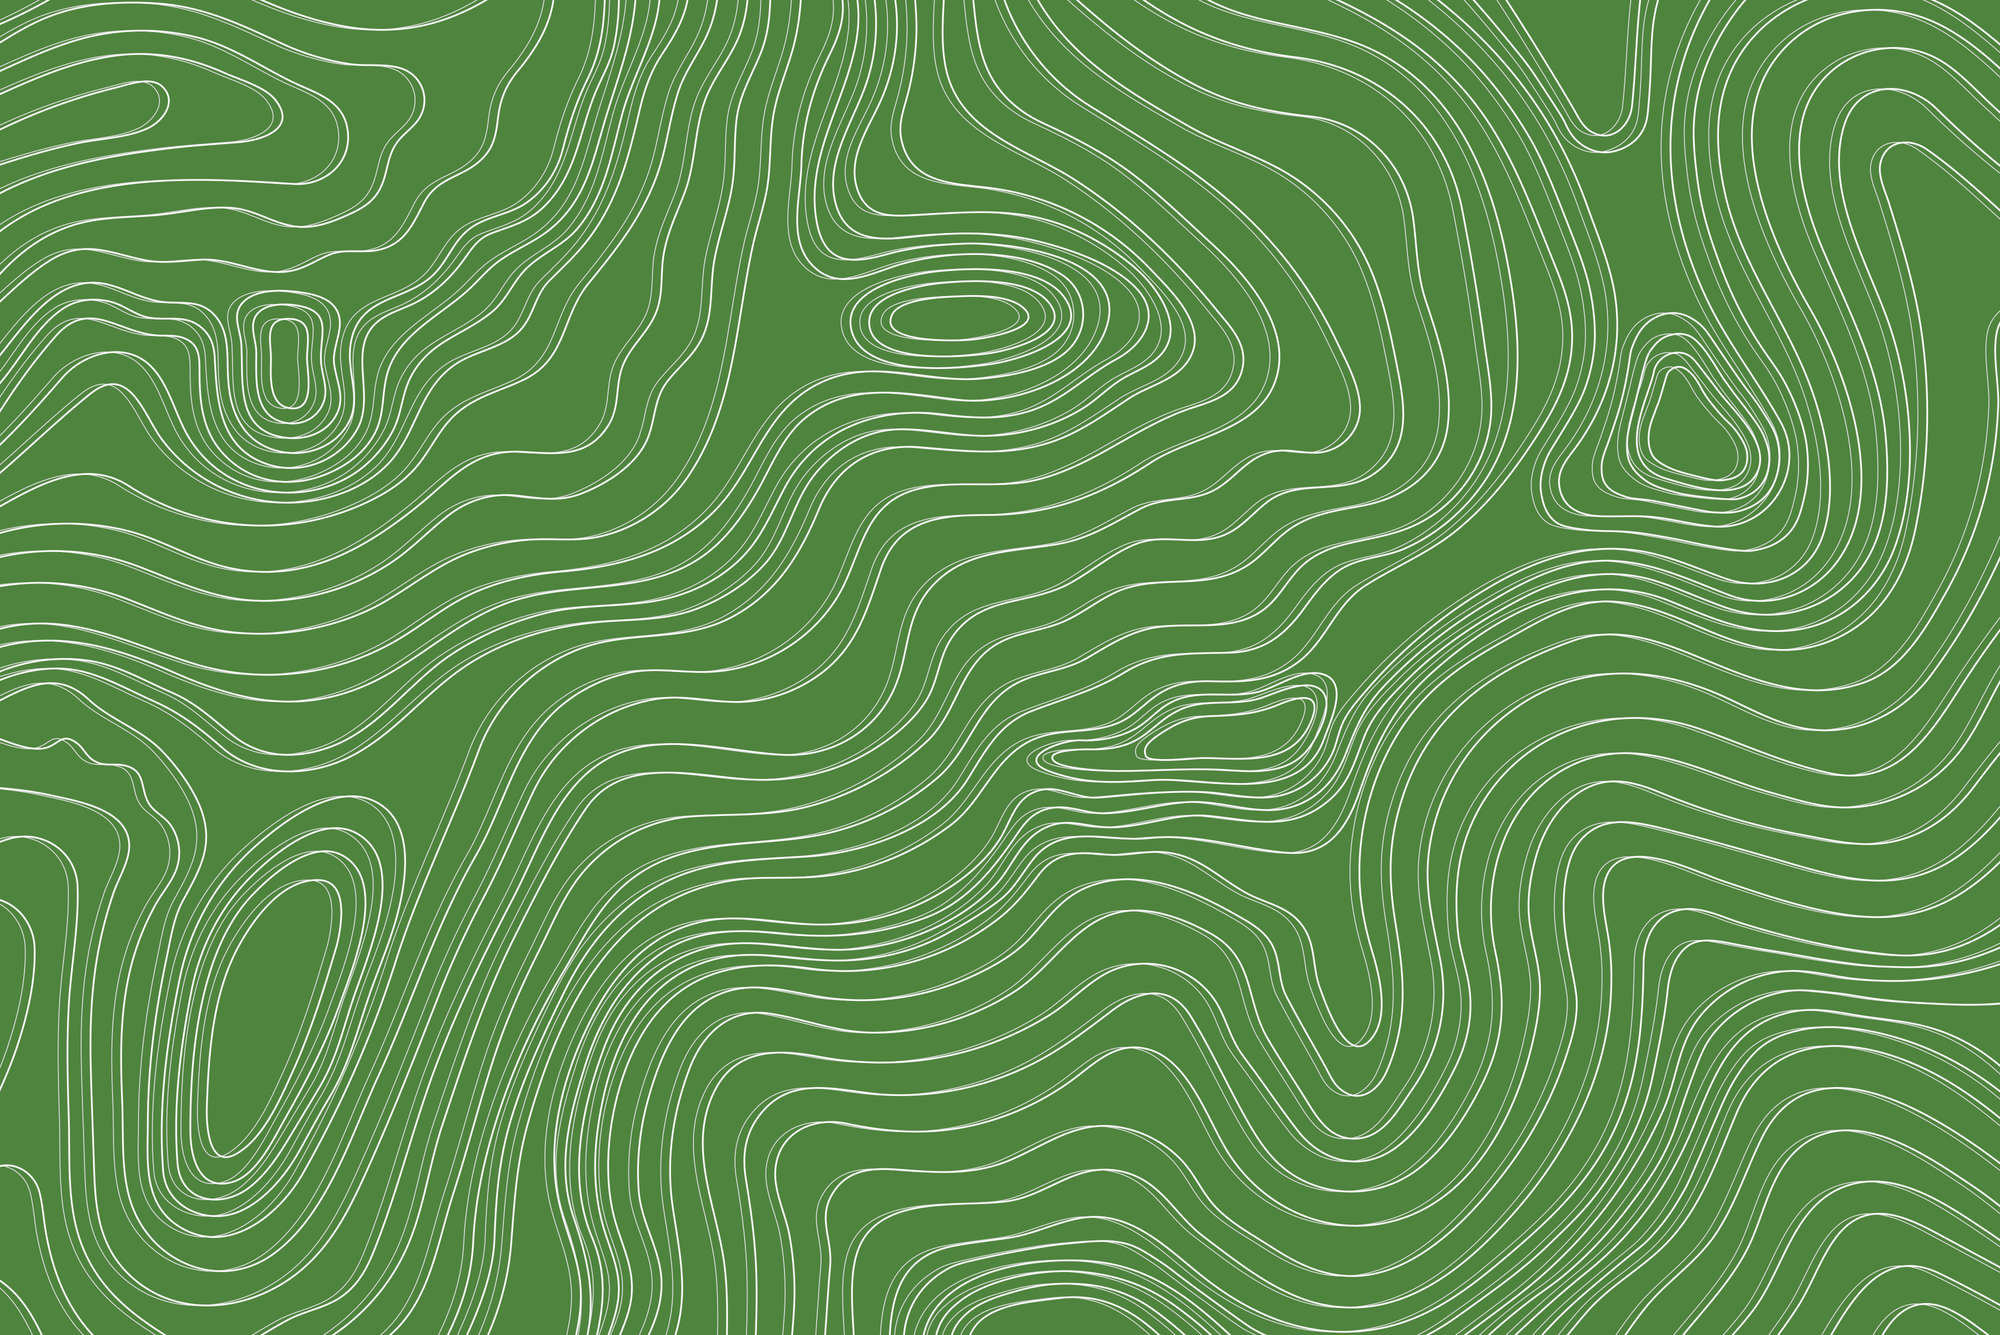             Papel pintado con diseño de olas y círculos en color verde sobre vellón liso mate
        